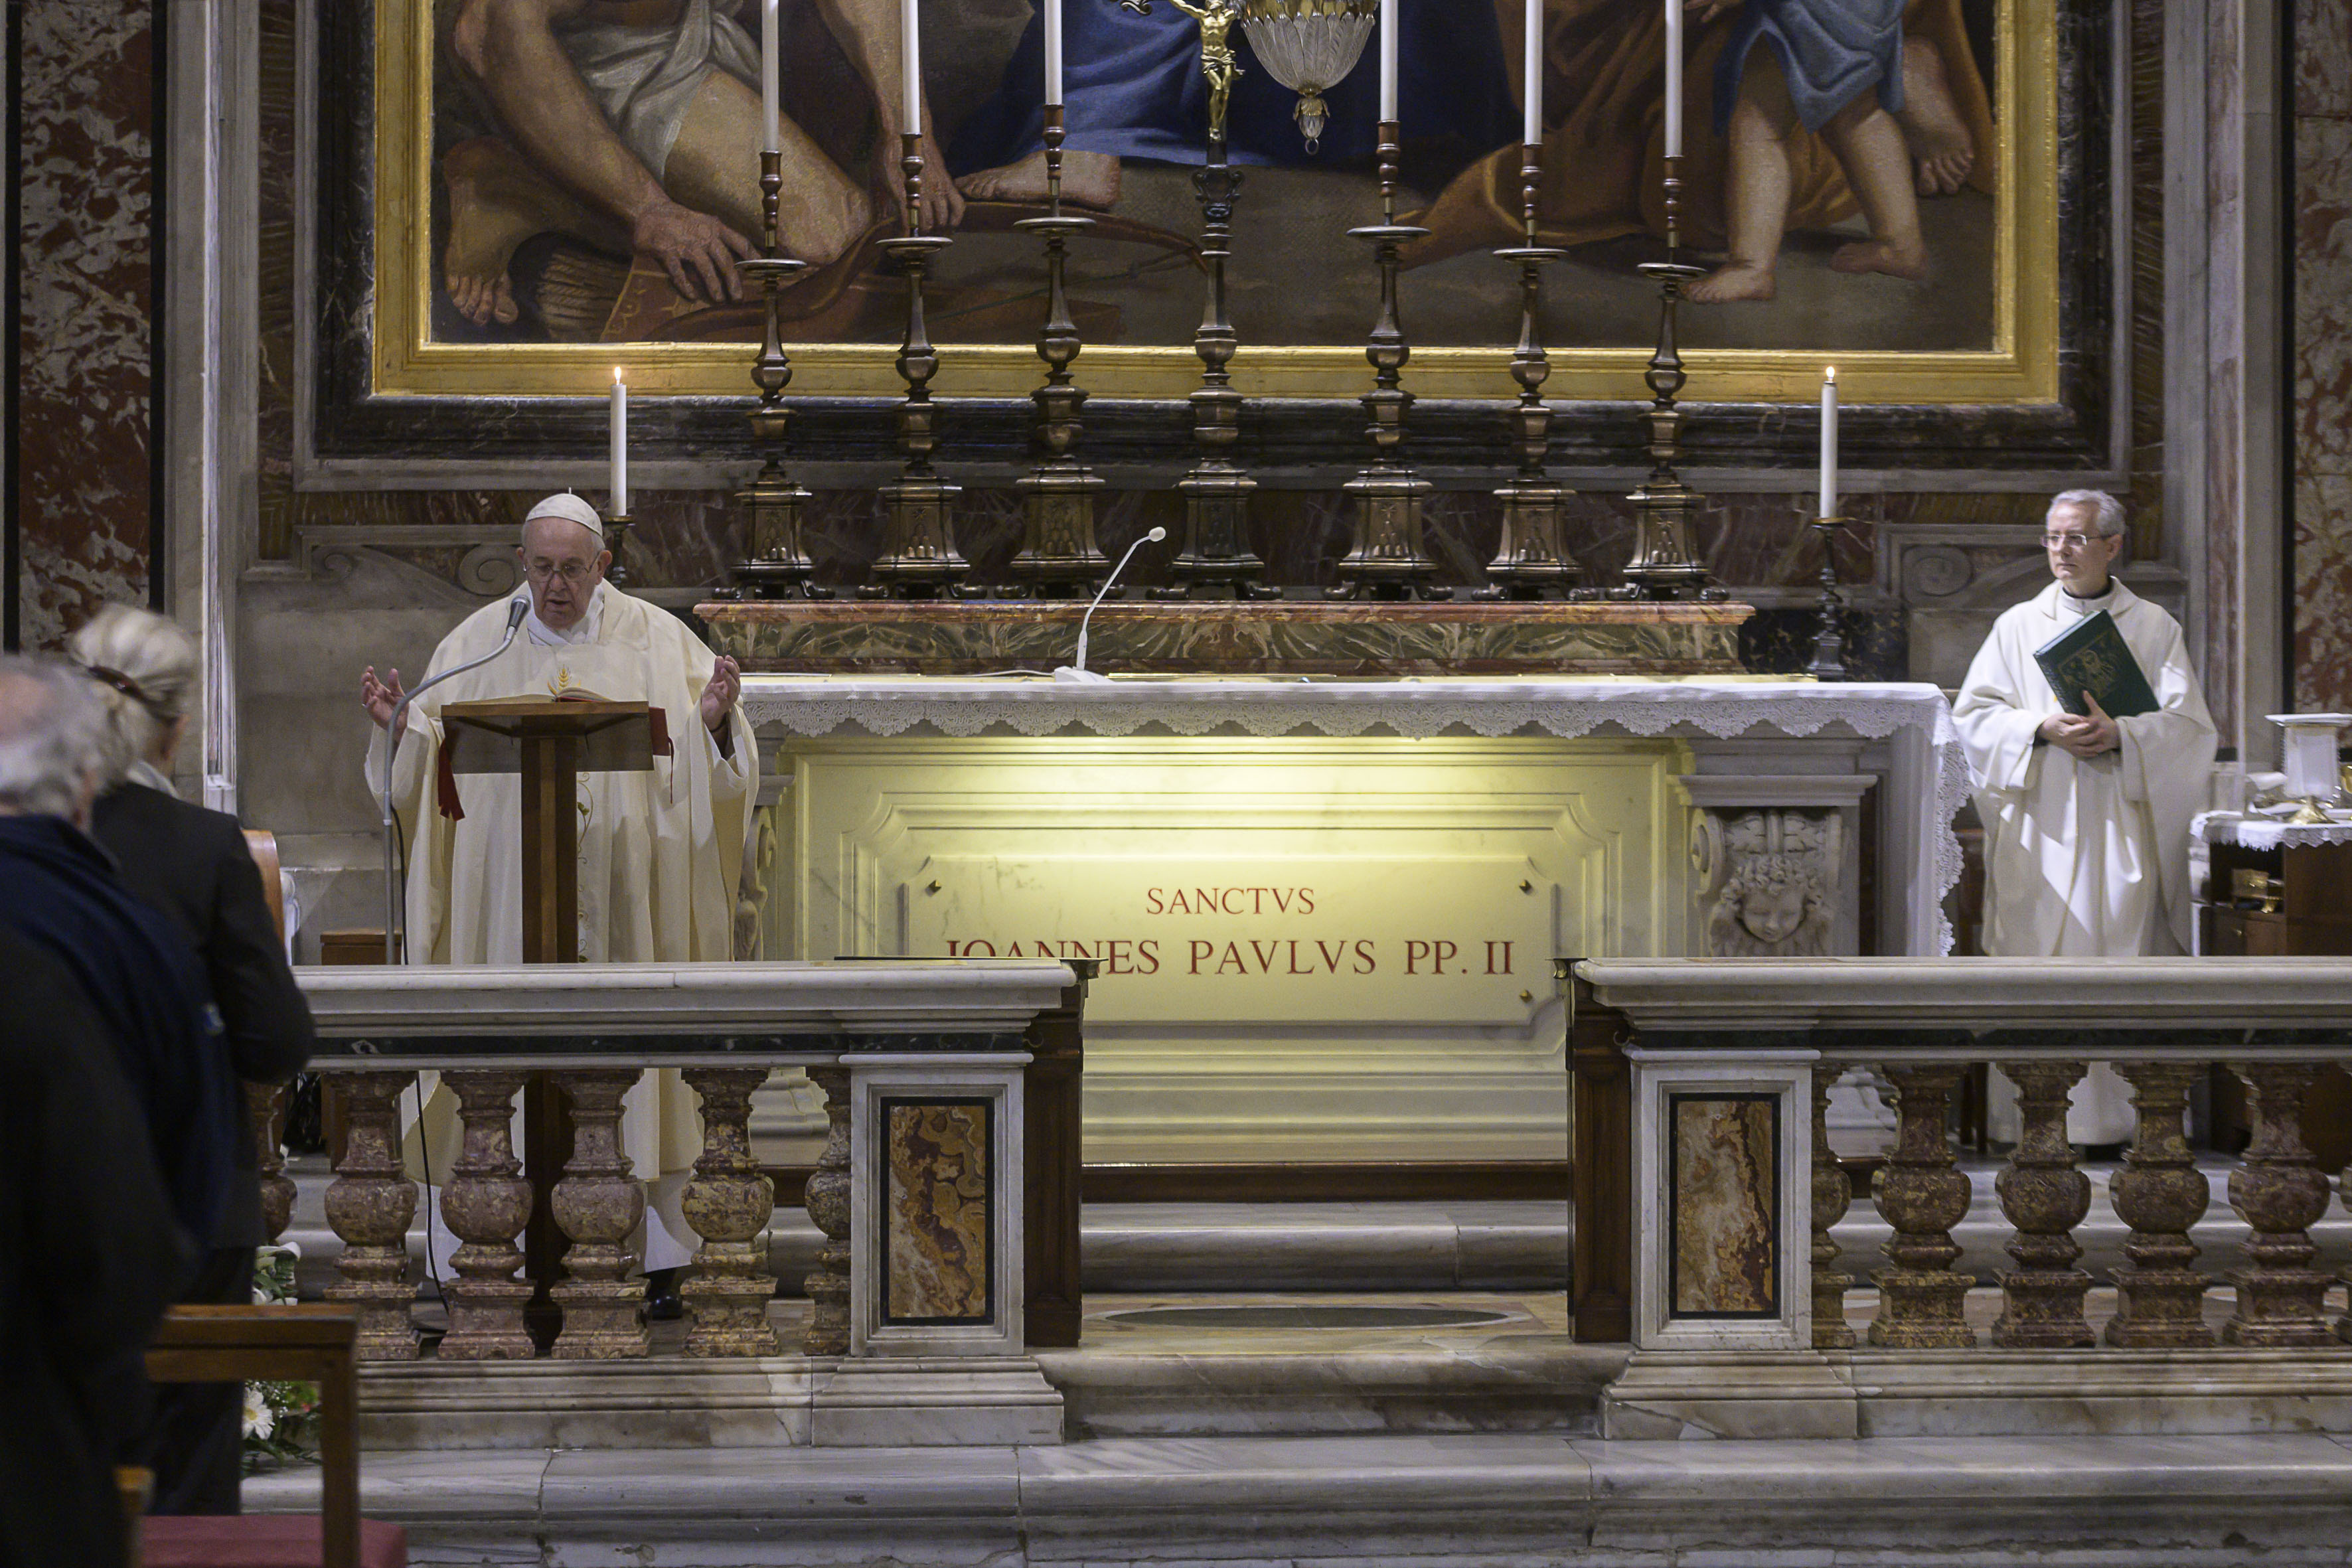 web2-am051820-pope-francis-holy-mass-centenary-saint-john-paul-ii-vatican-media-foto_1-1.jpg